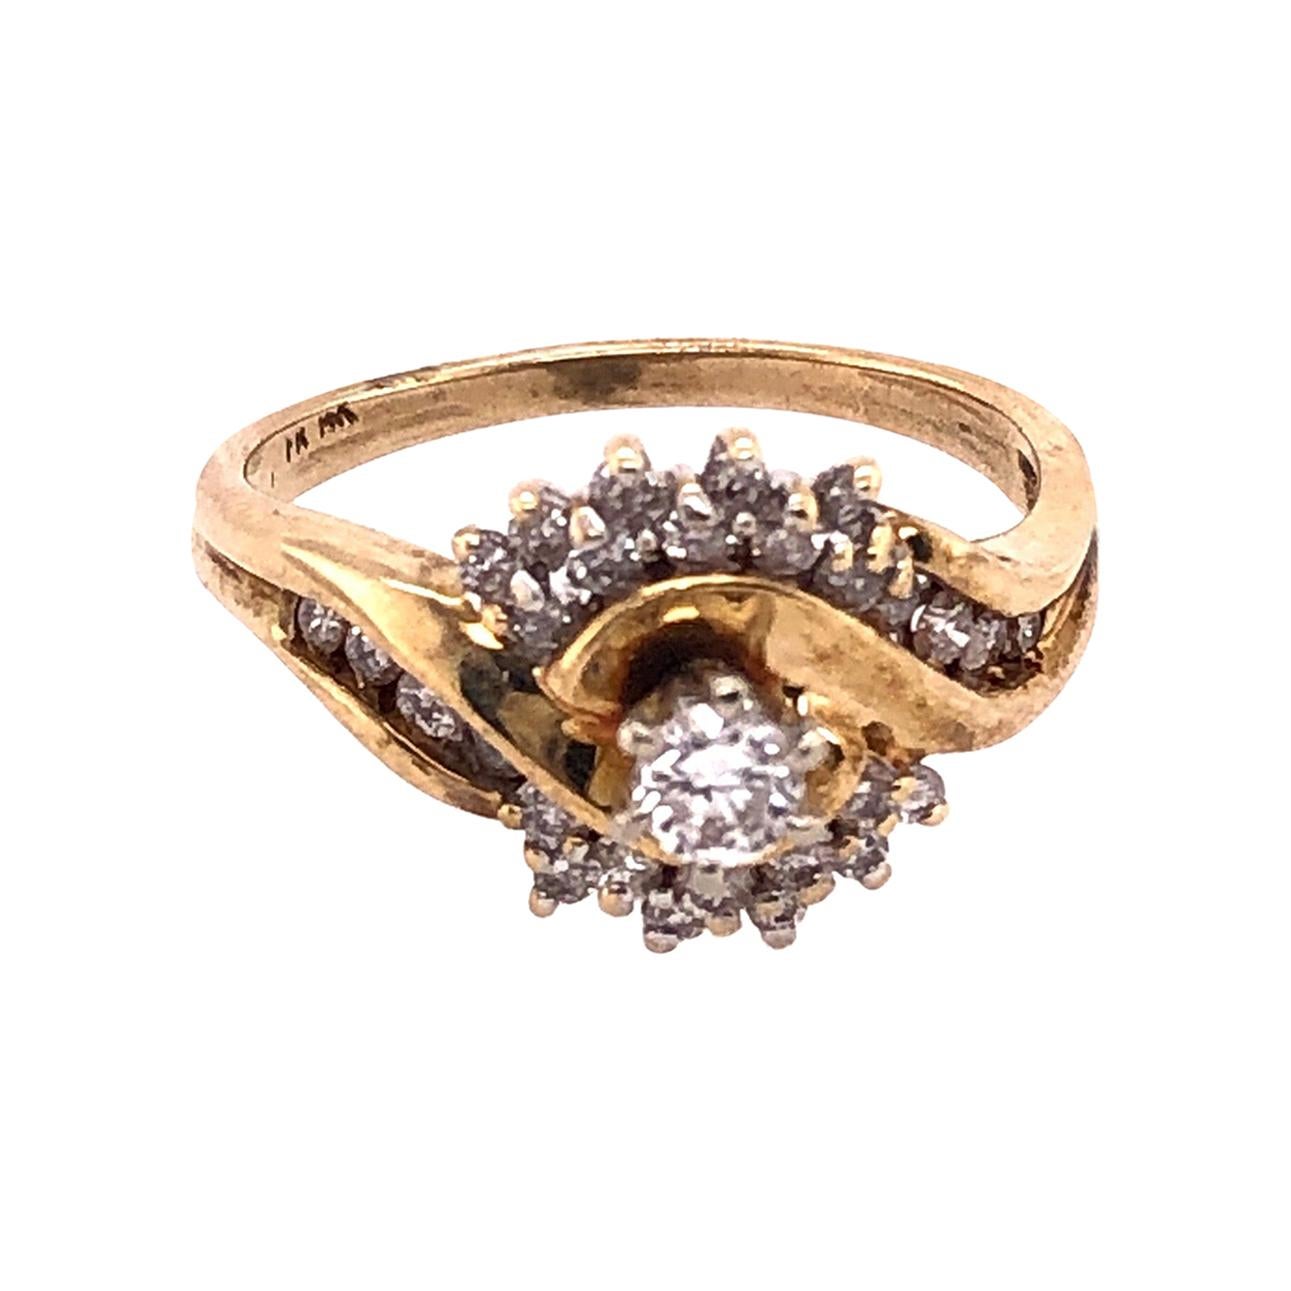 14 Karat Yellow Gold Engagement Ring 0.55 Total Diamond Weight